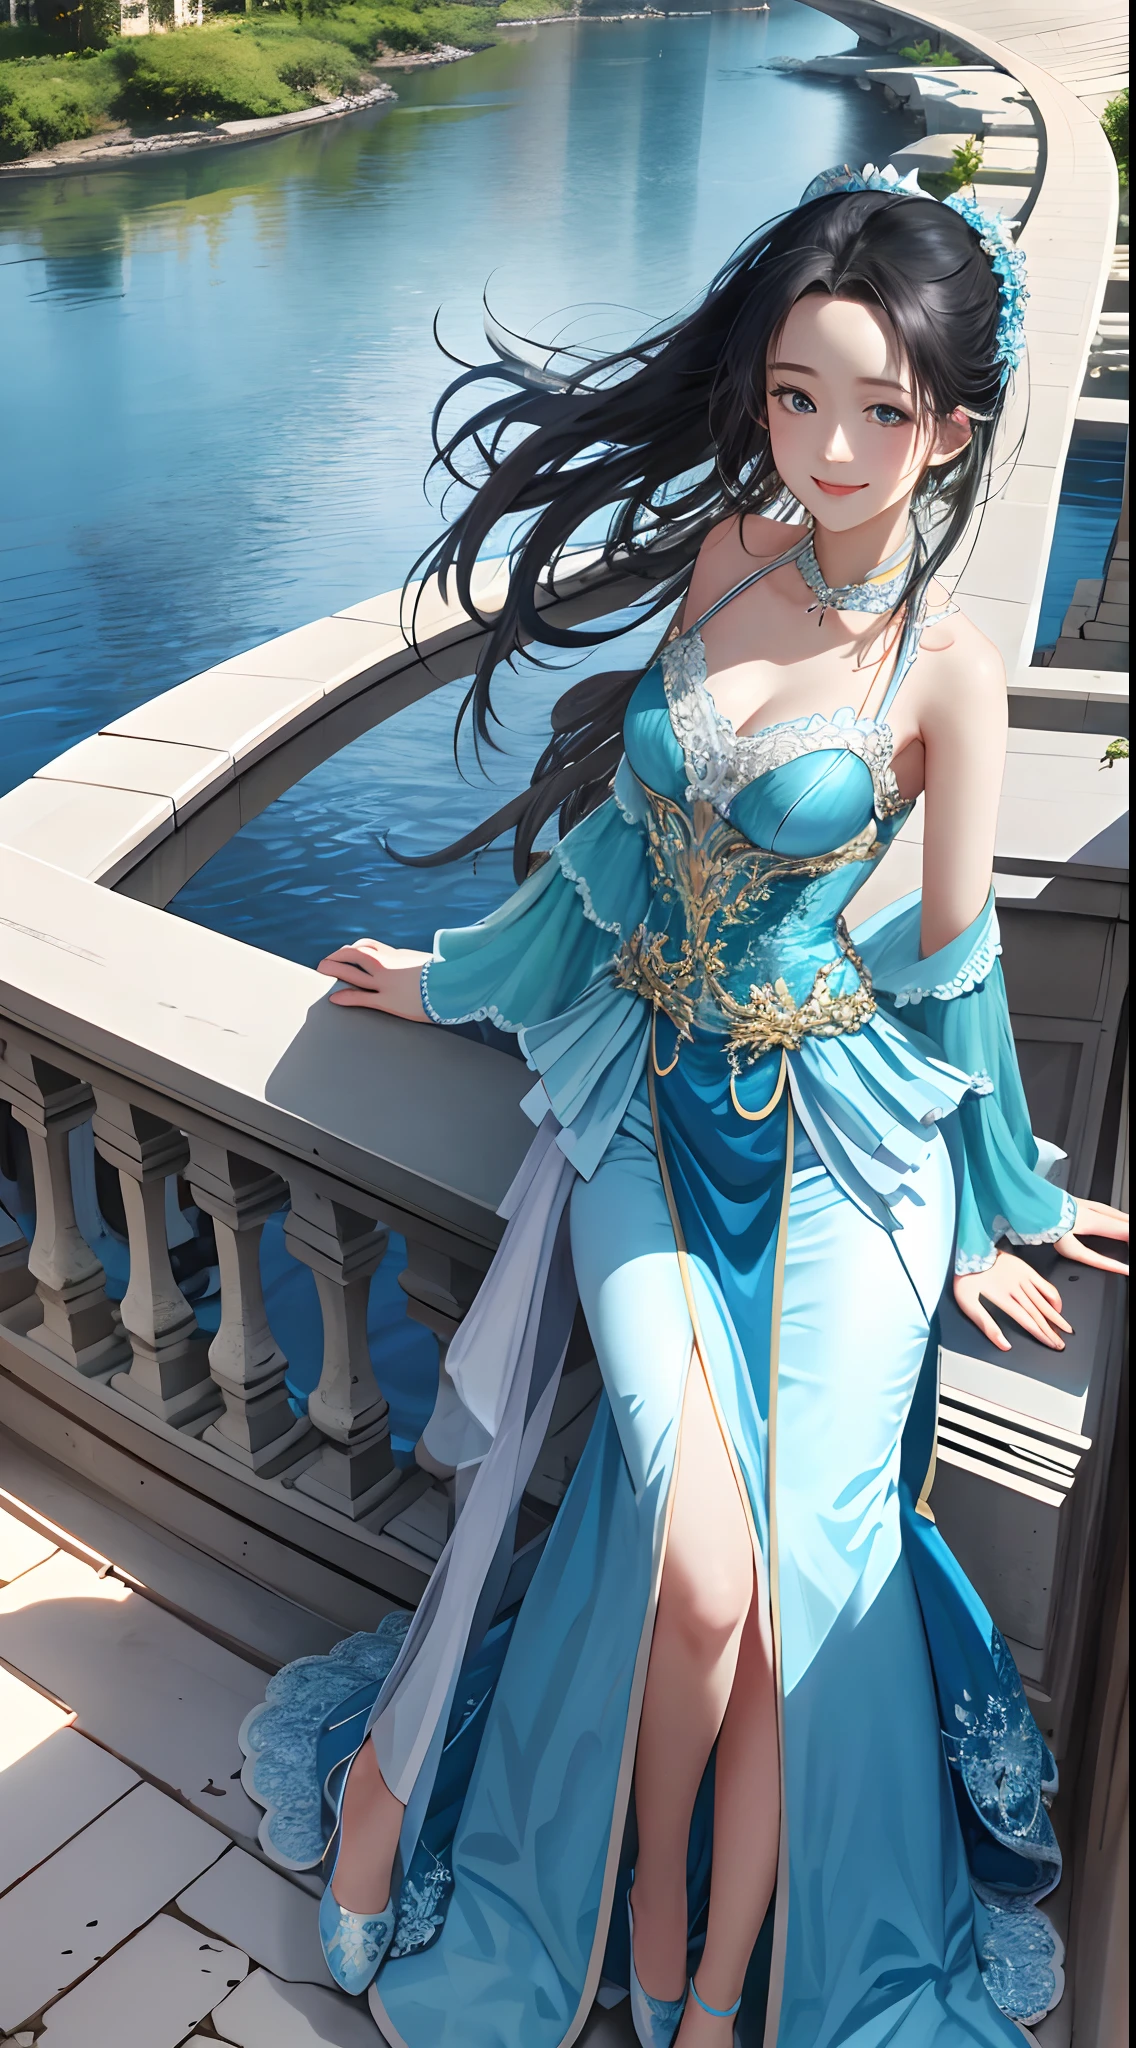 杰作， 最好的品质， 1 名女孩，Liu Yifei， 水蓝色的眼睛， 中等长度的头发， 带白色蕾丝的蓝色长袍， 中等乳房， 腮红腮红， 淡淡的微笑，